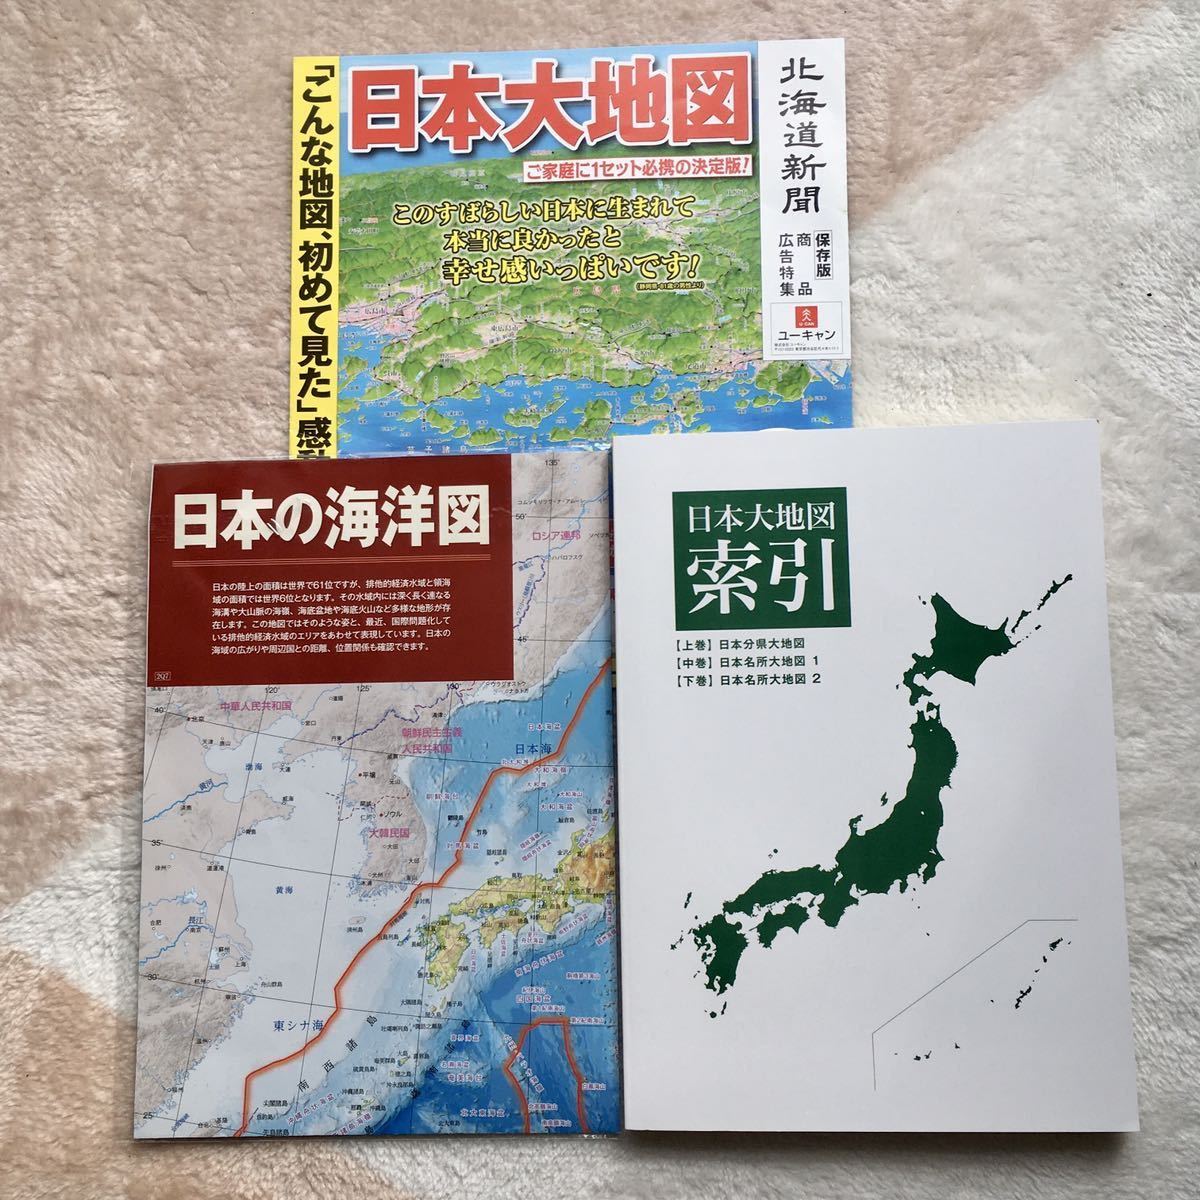 日本大地図 ユーキャン 2020年 mrlocationscout.com